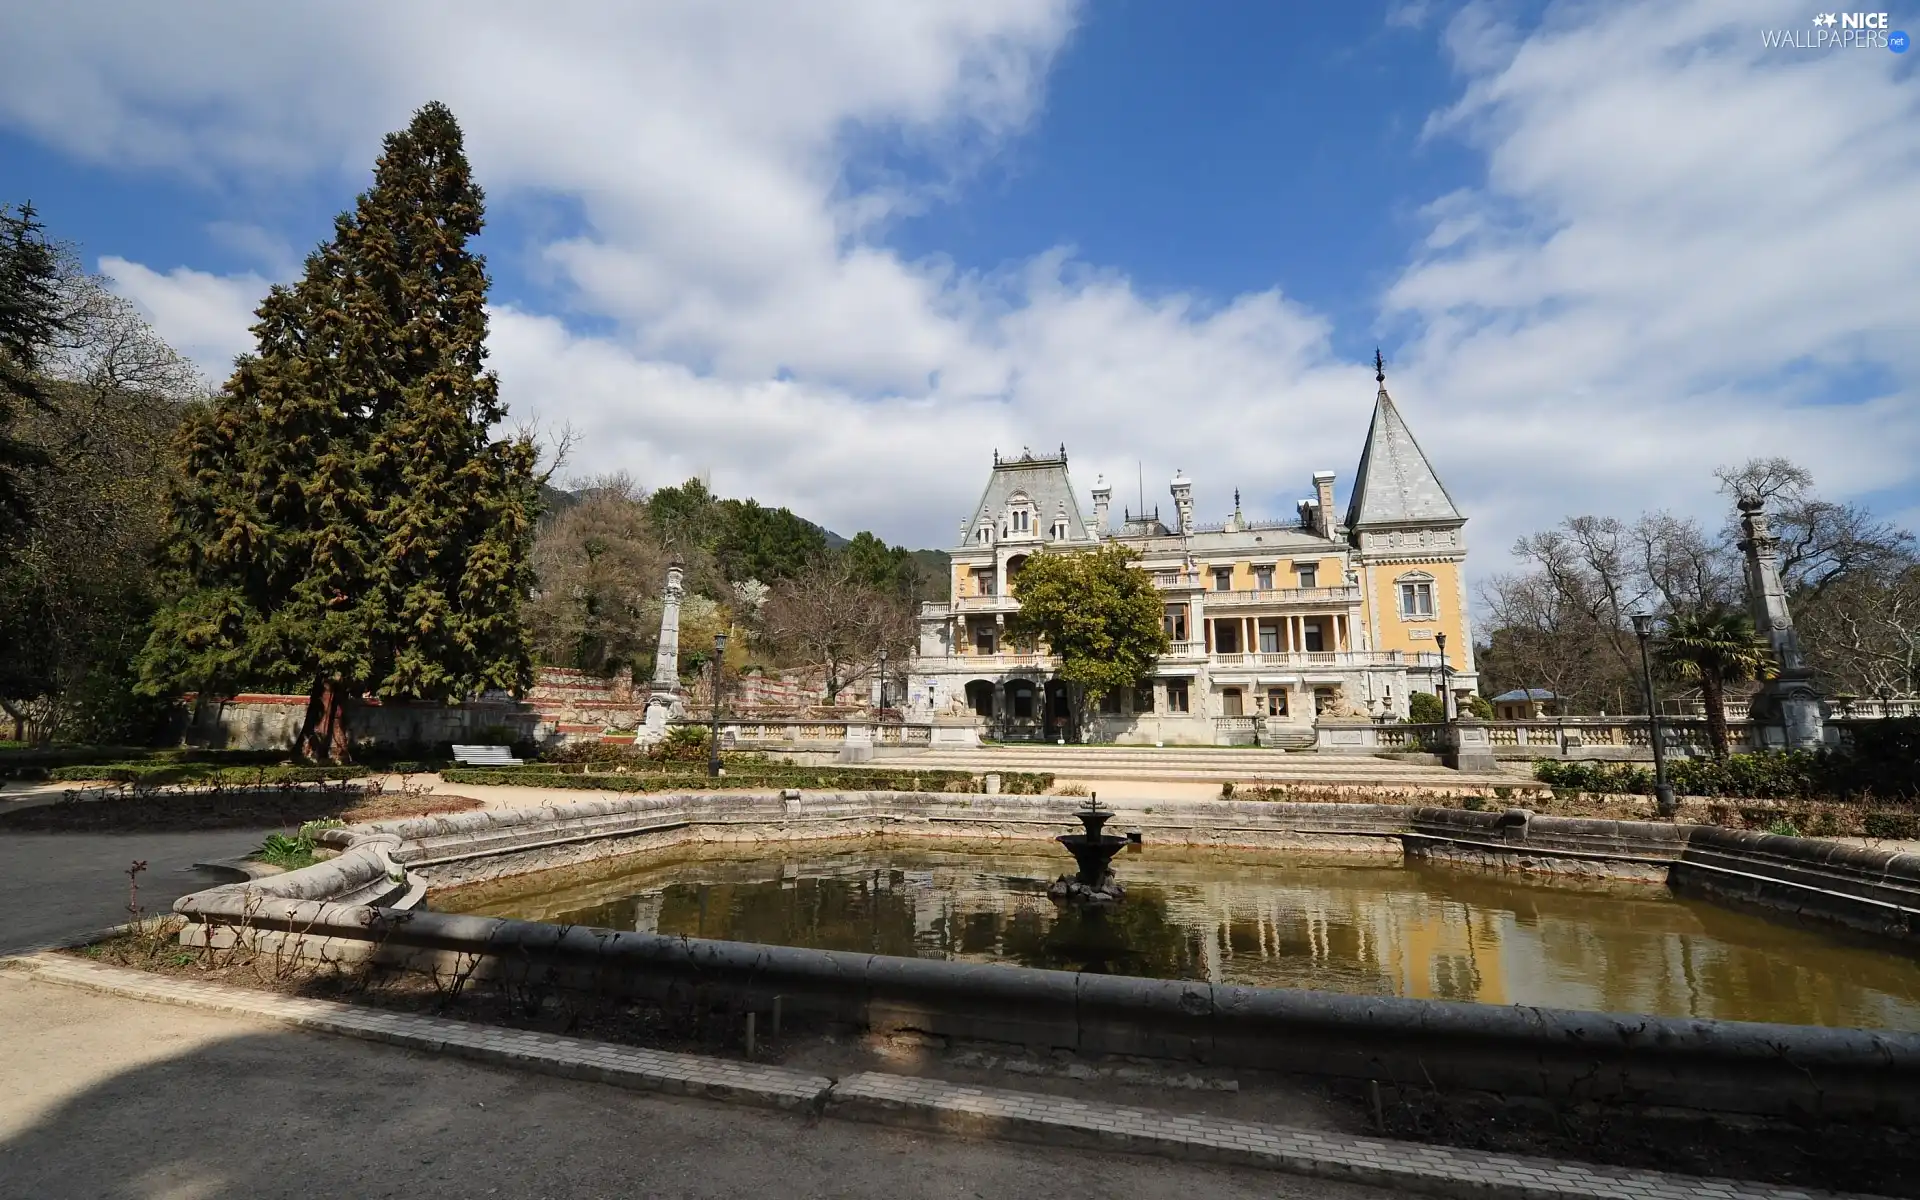 Park, palace, fountain